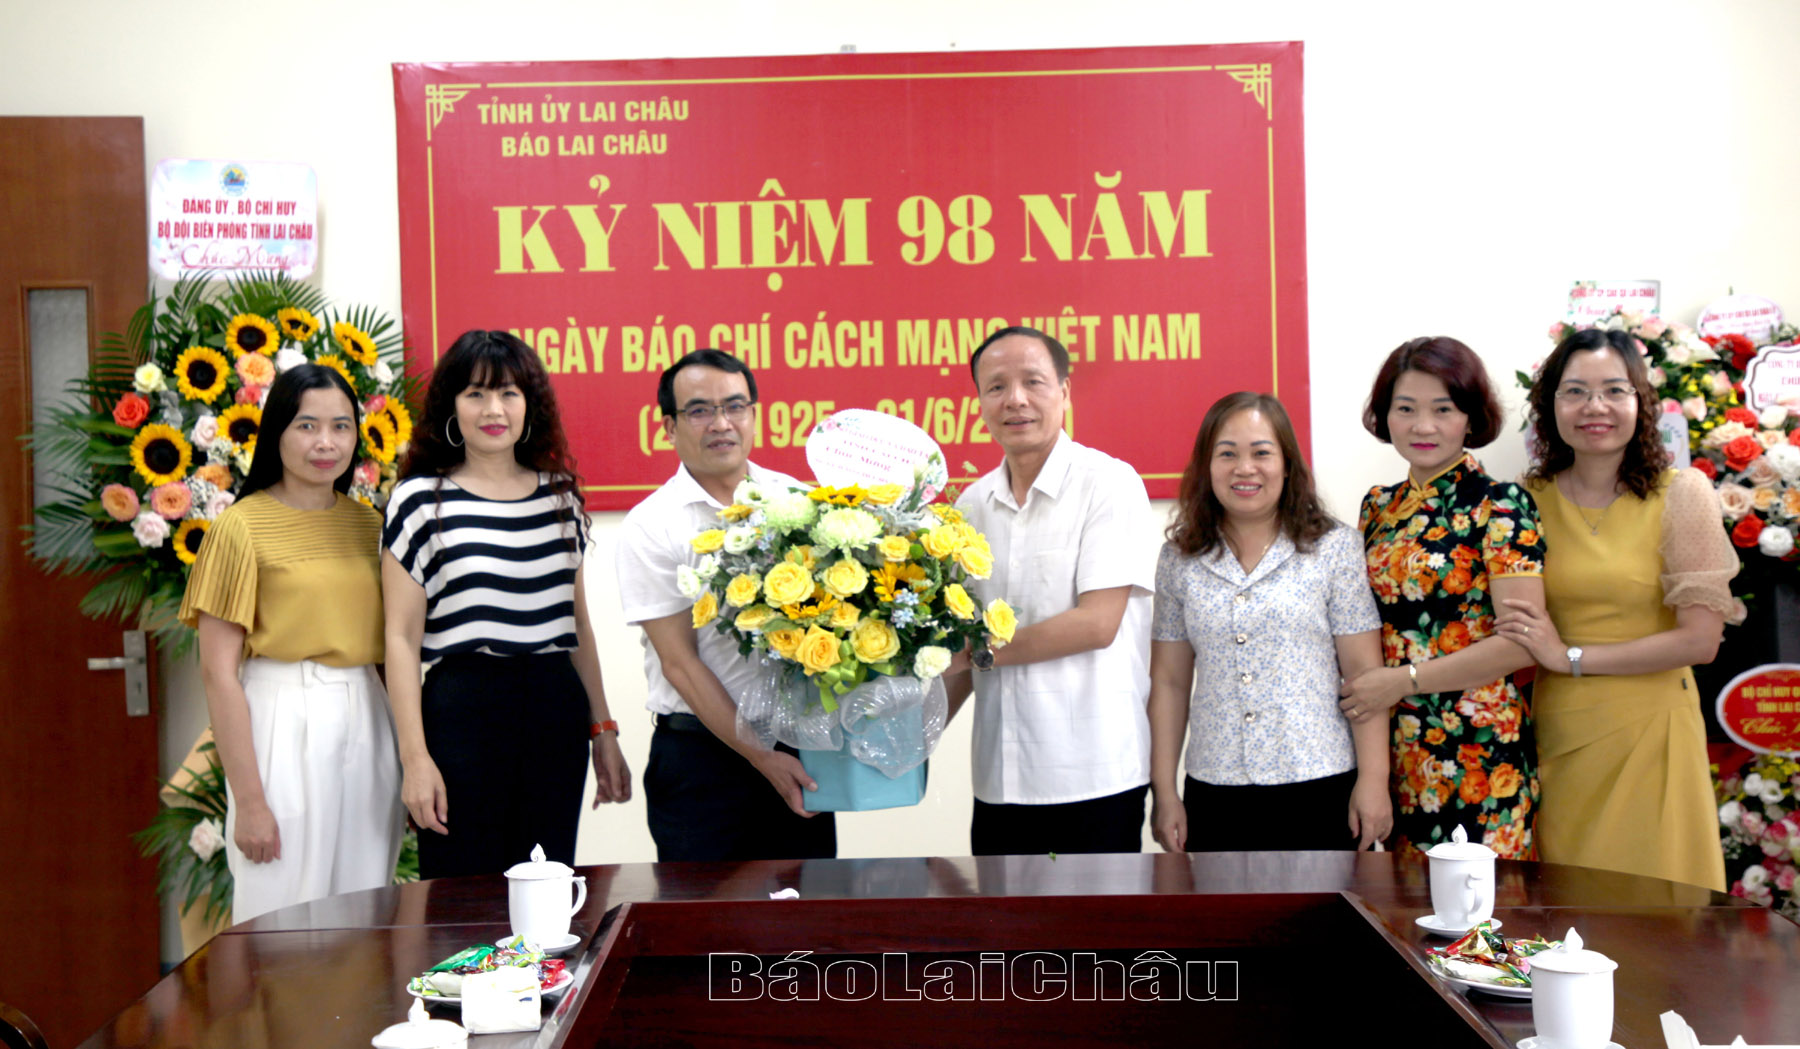 Sở Giáo dục và Đào tạo chúc mừng Báo Lai Châu nhân kỷ niệm 98 năm Ngày Báo chí cách mạng Việt Nam.